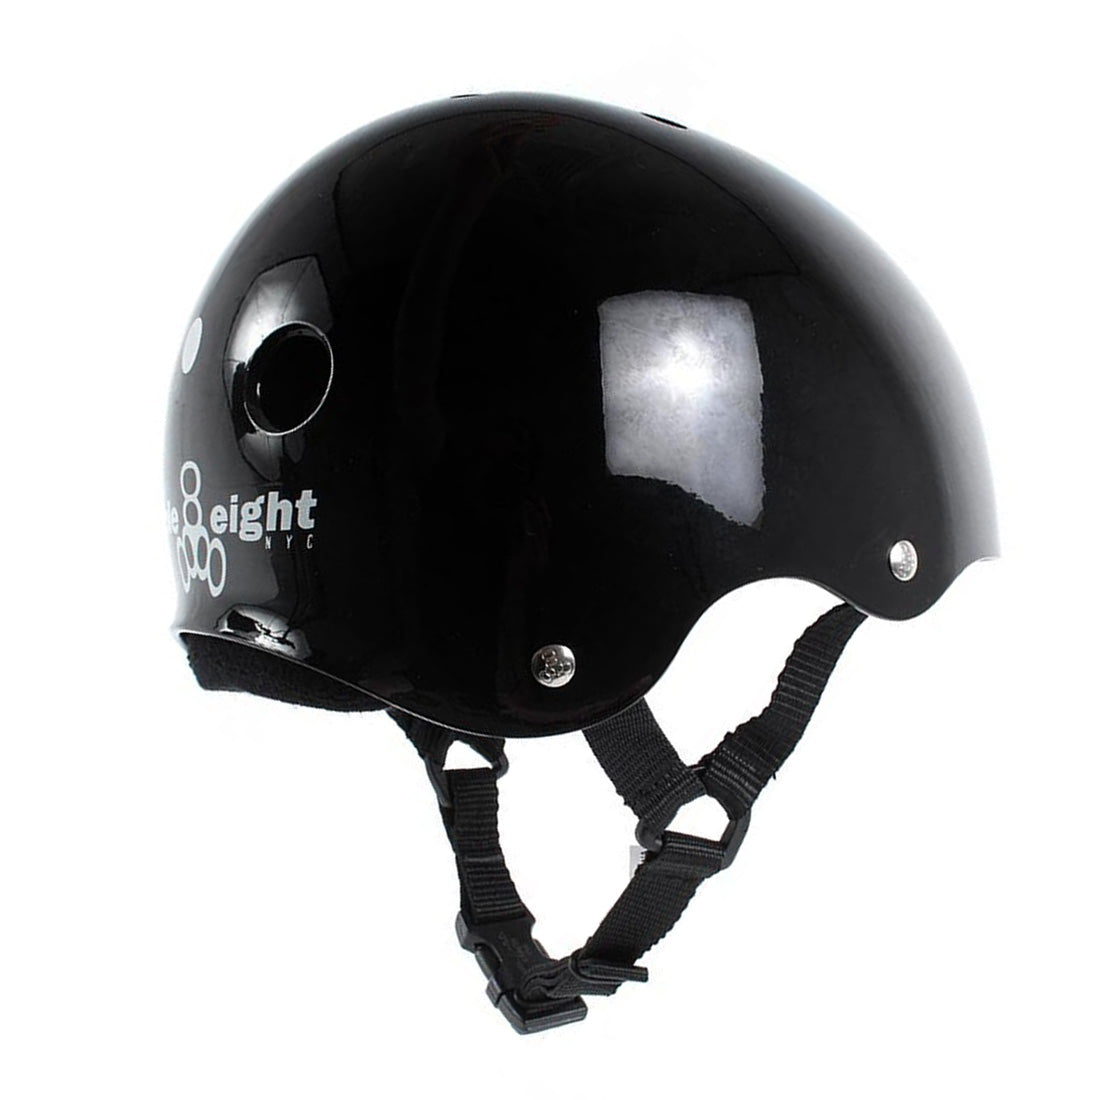 Triple 8 Skate SS Helmet - Black Gloss Helmets